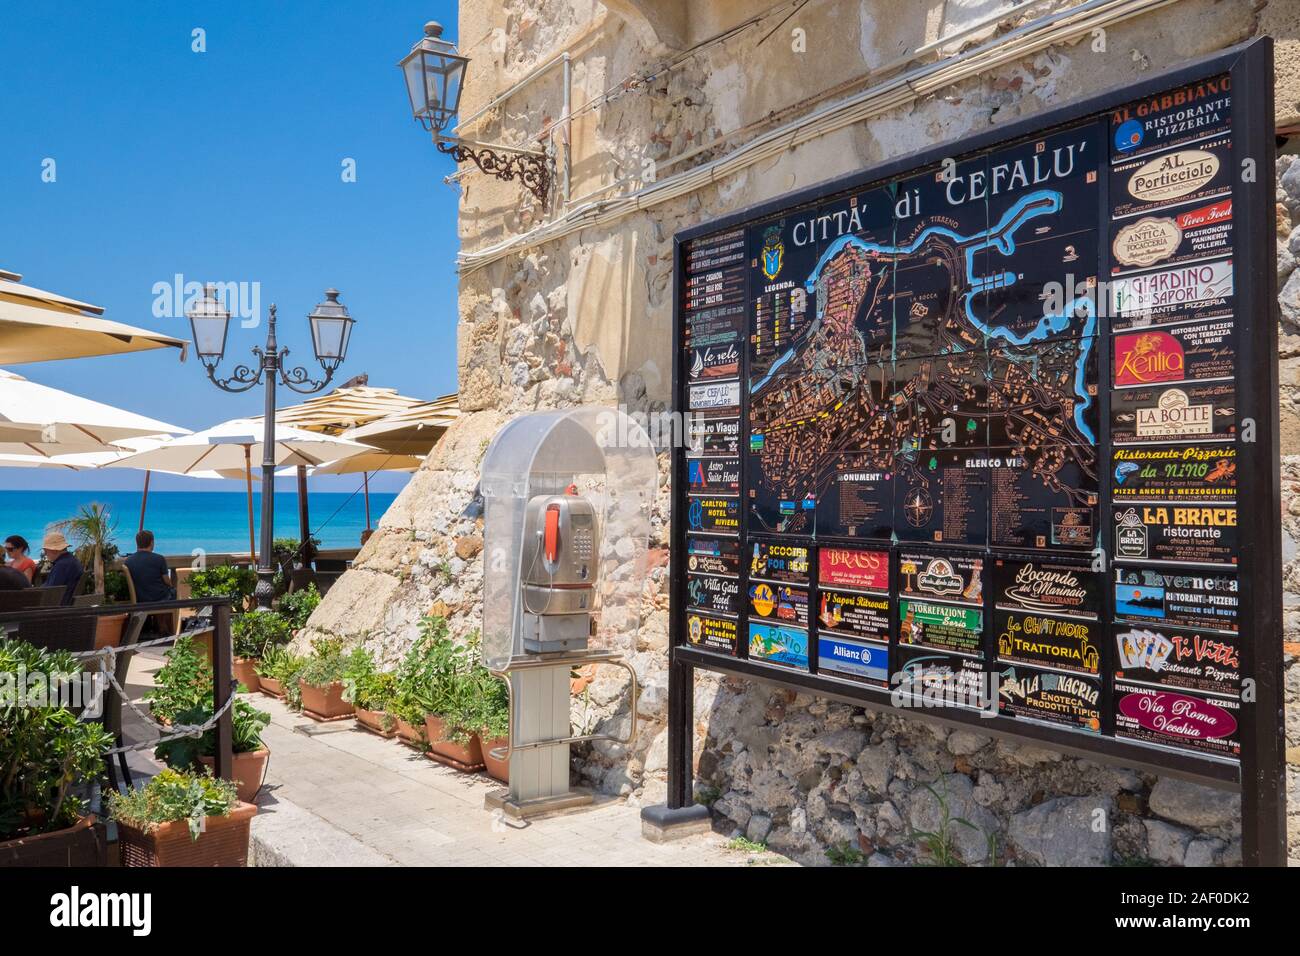 Le front de mer de Cefalù, Sicile. Cefalù historique est une importante destination touristique sur la Sicile. Banque D'Images